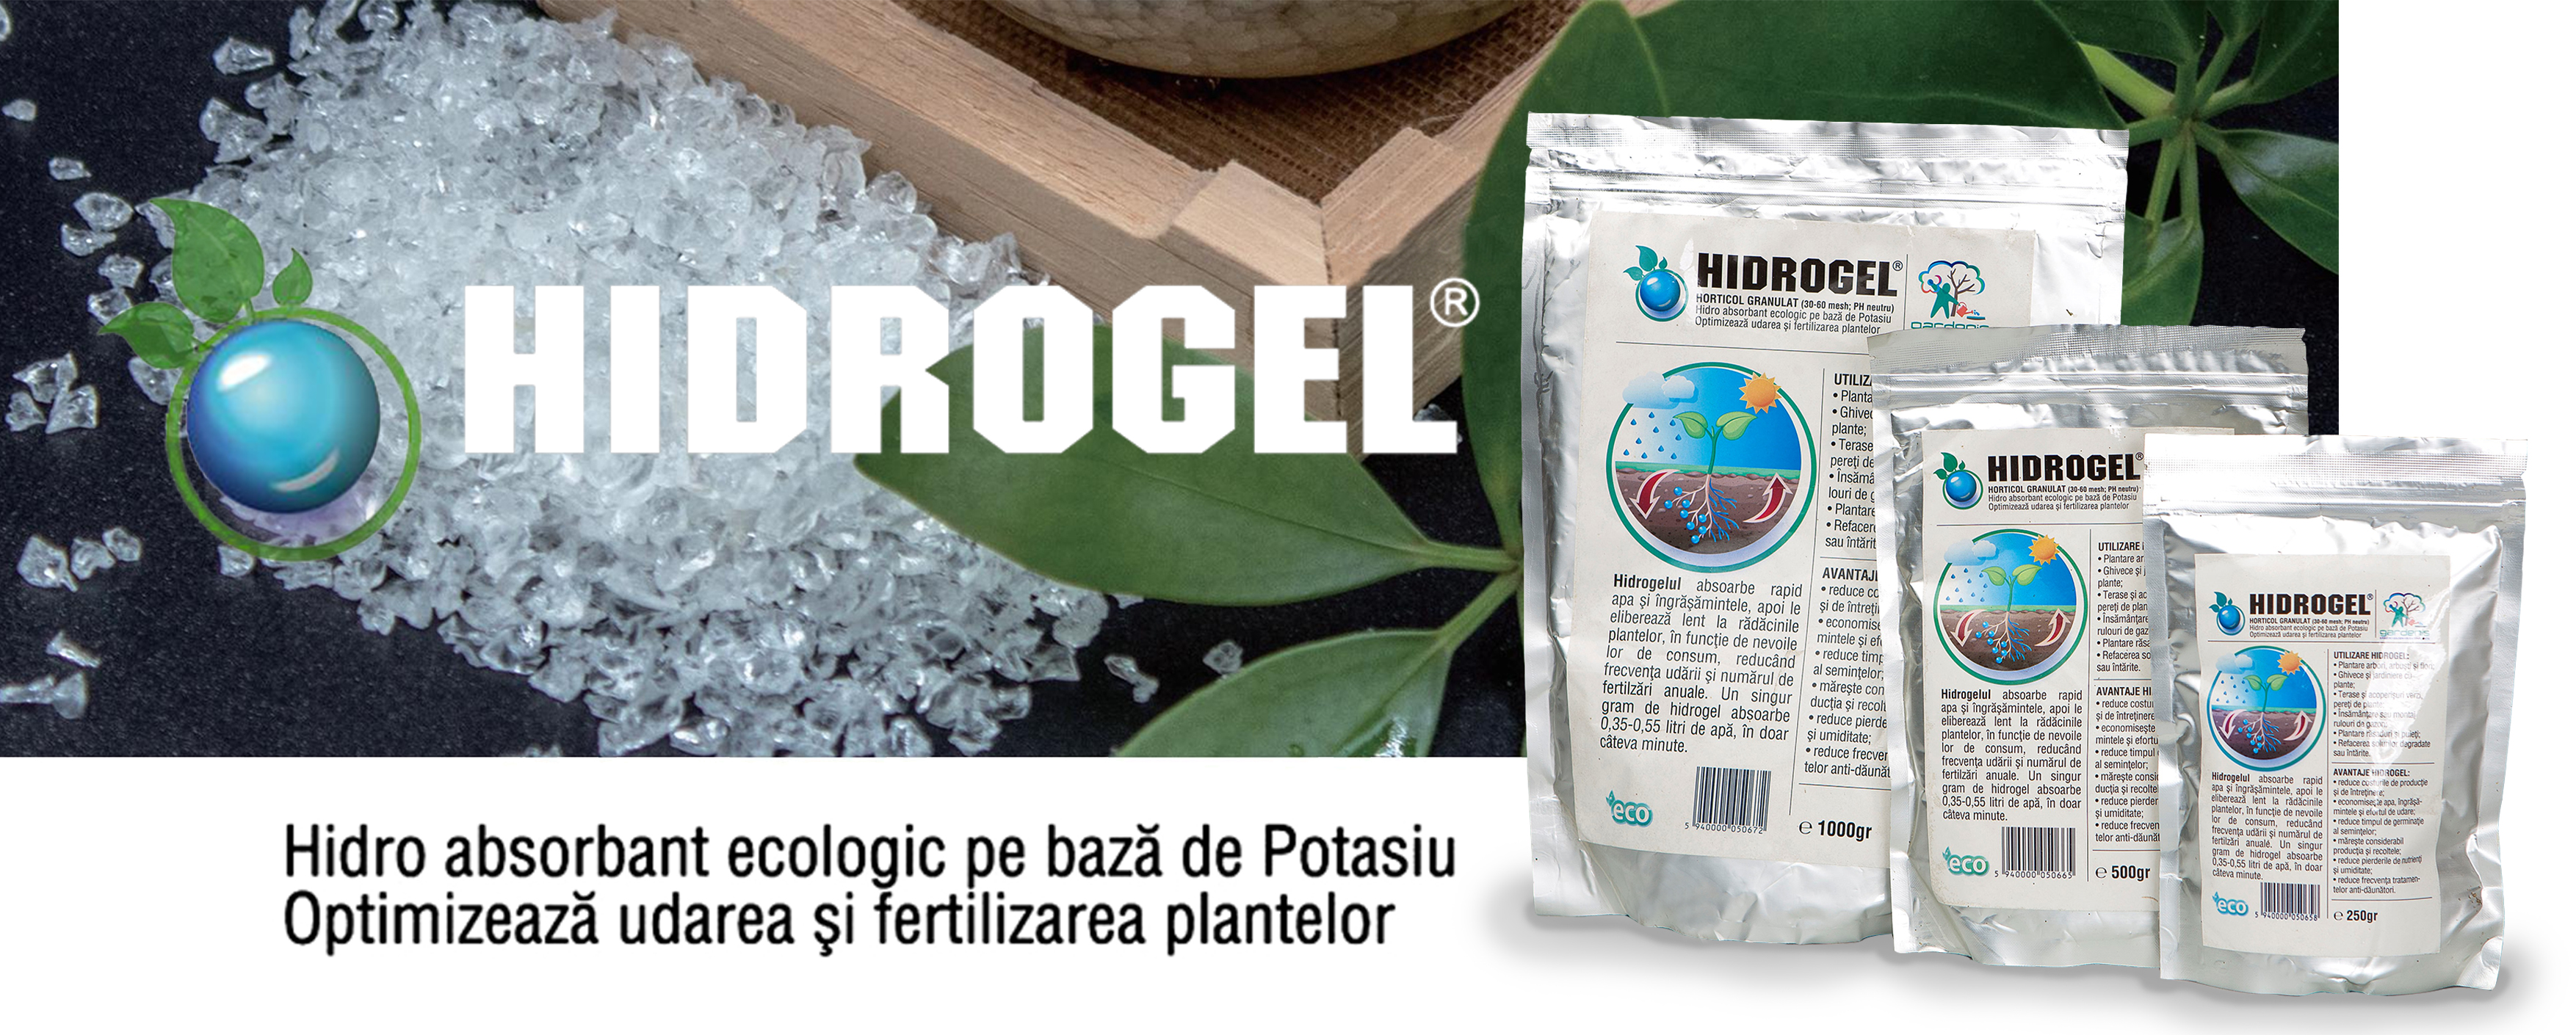 Banner prezentare Hidrogel agricol sau horticol